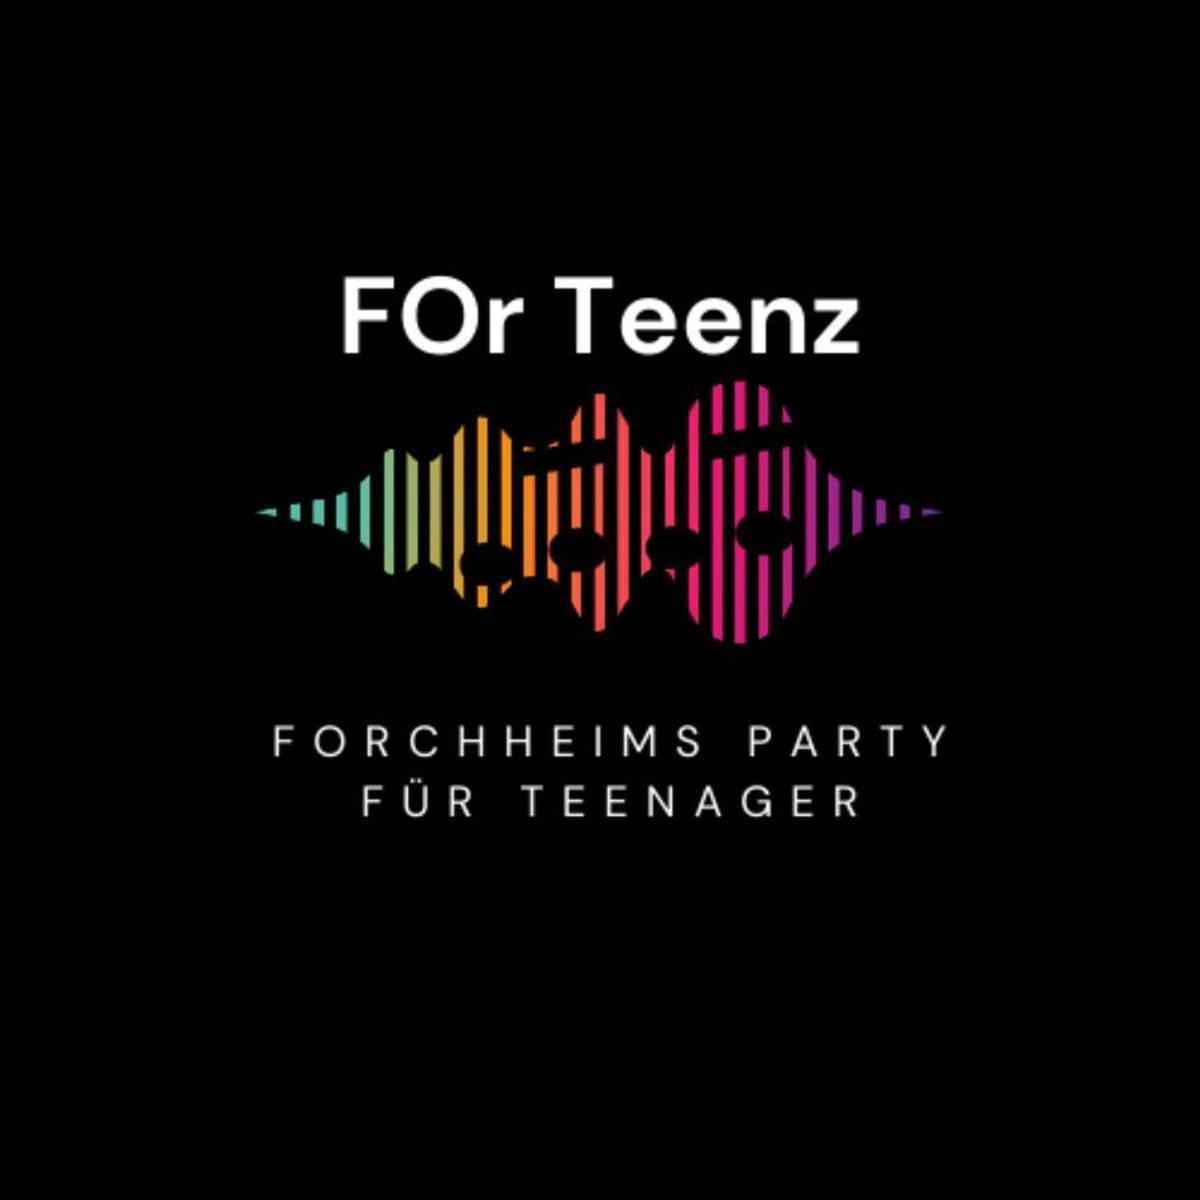 Forchheims Party für Teenager